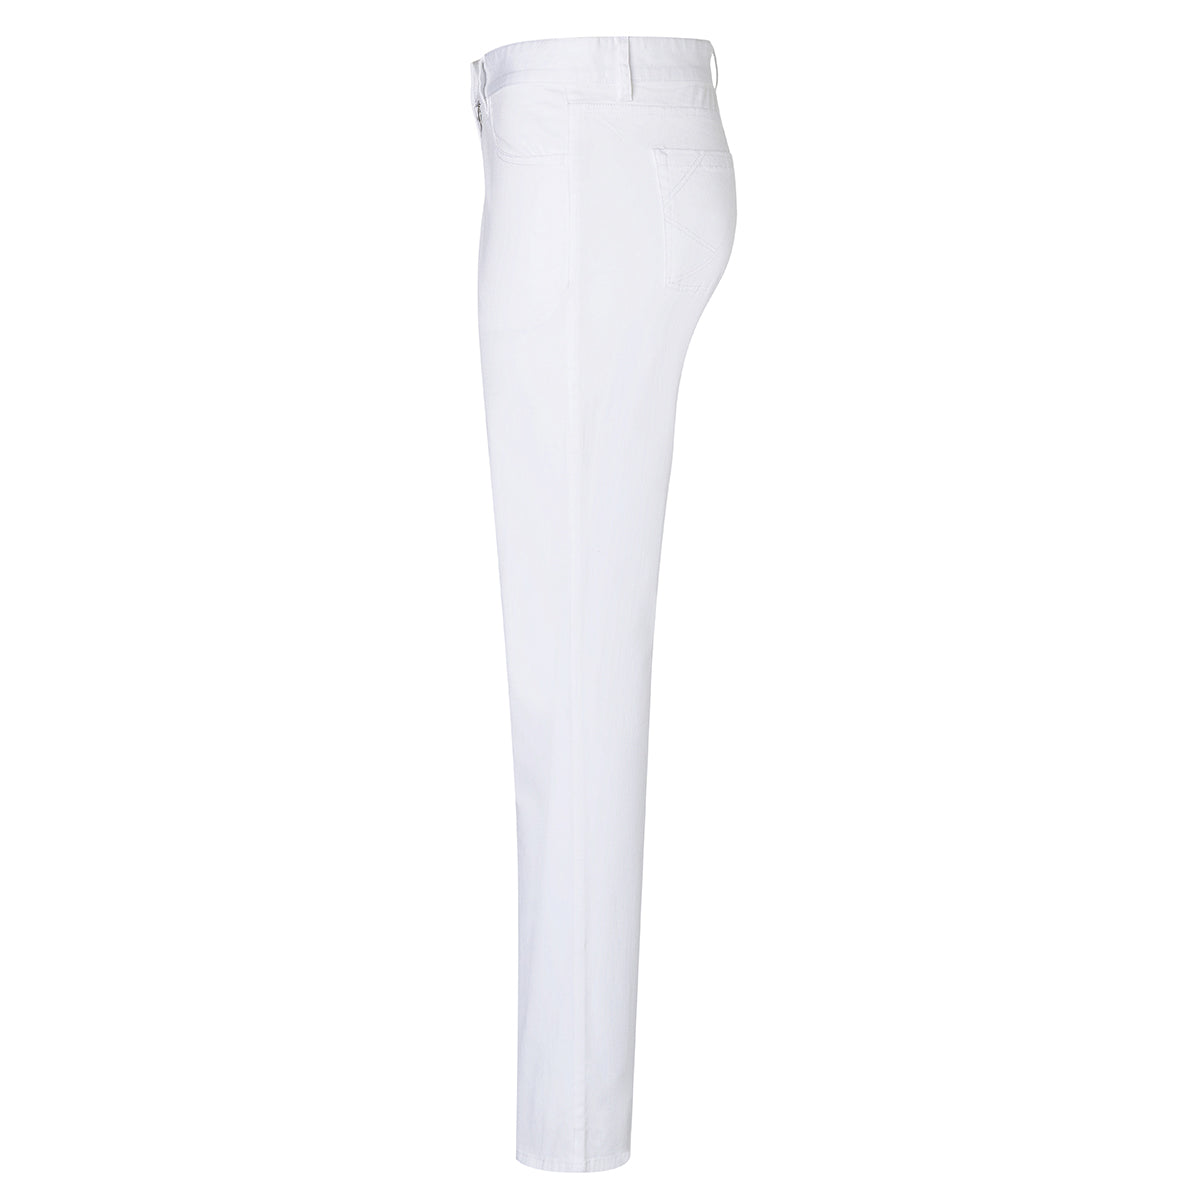 Karlowsky - 5-lomme bukser til damer - Hvid - Størrelse: 50